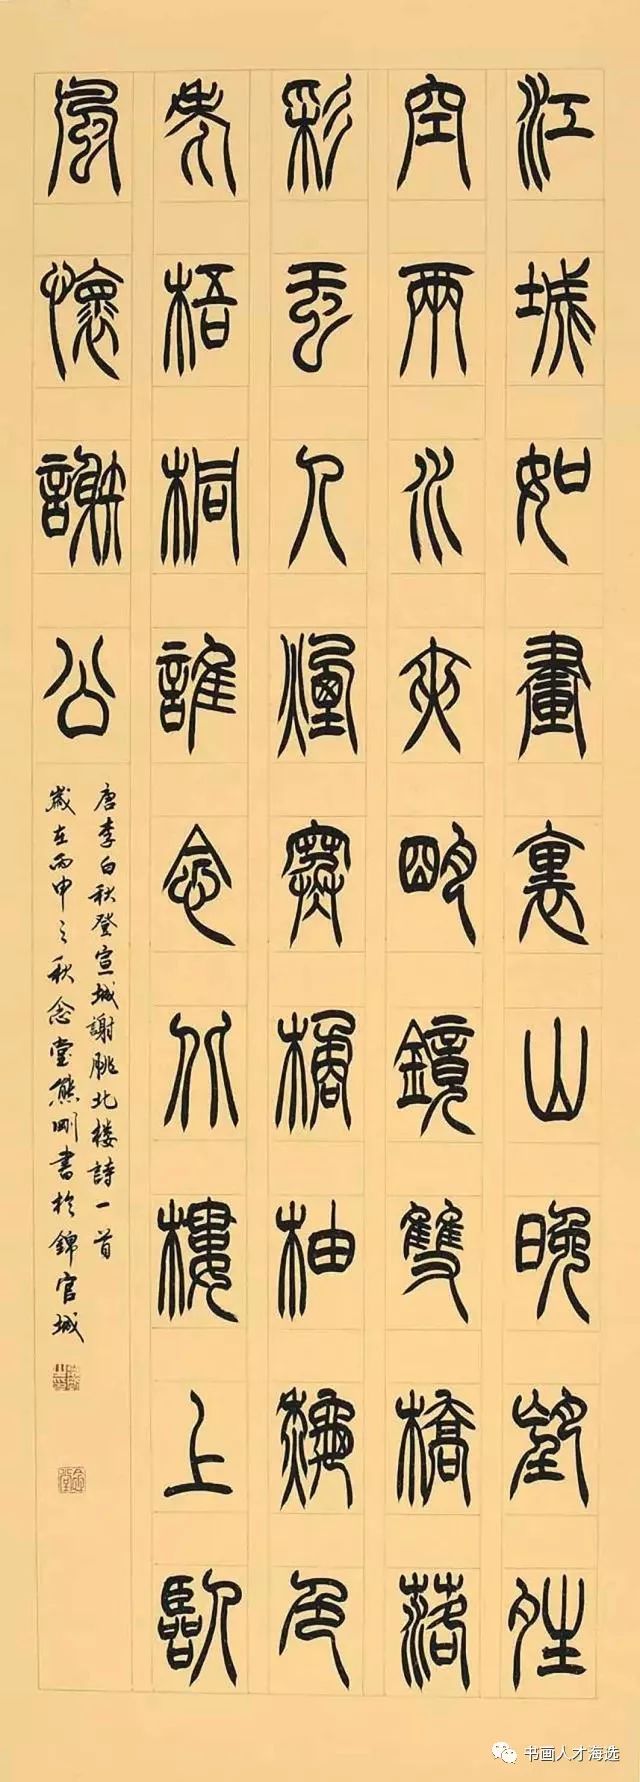 篆书作品(第二届华夏之星入选作品) 出版:《第二届中国书画人才海选